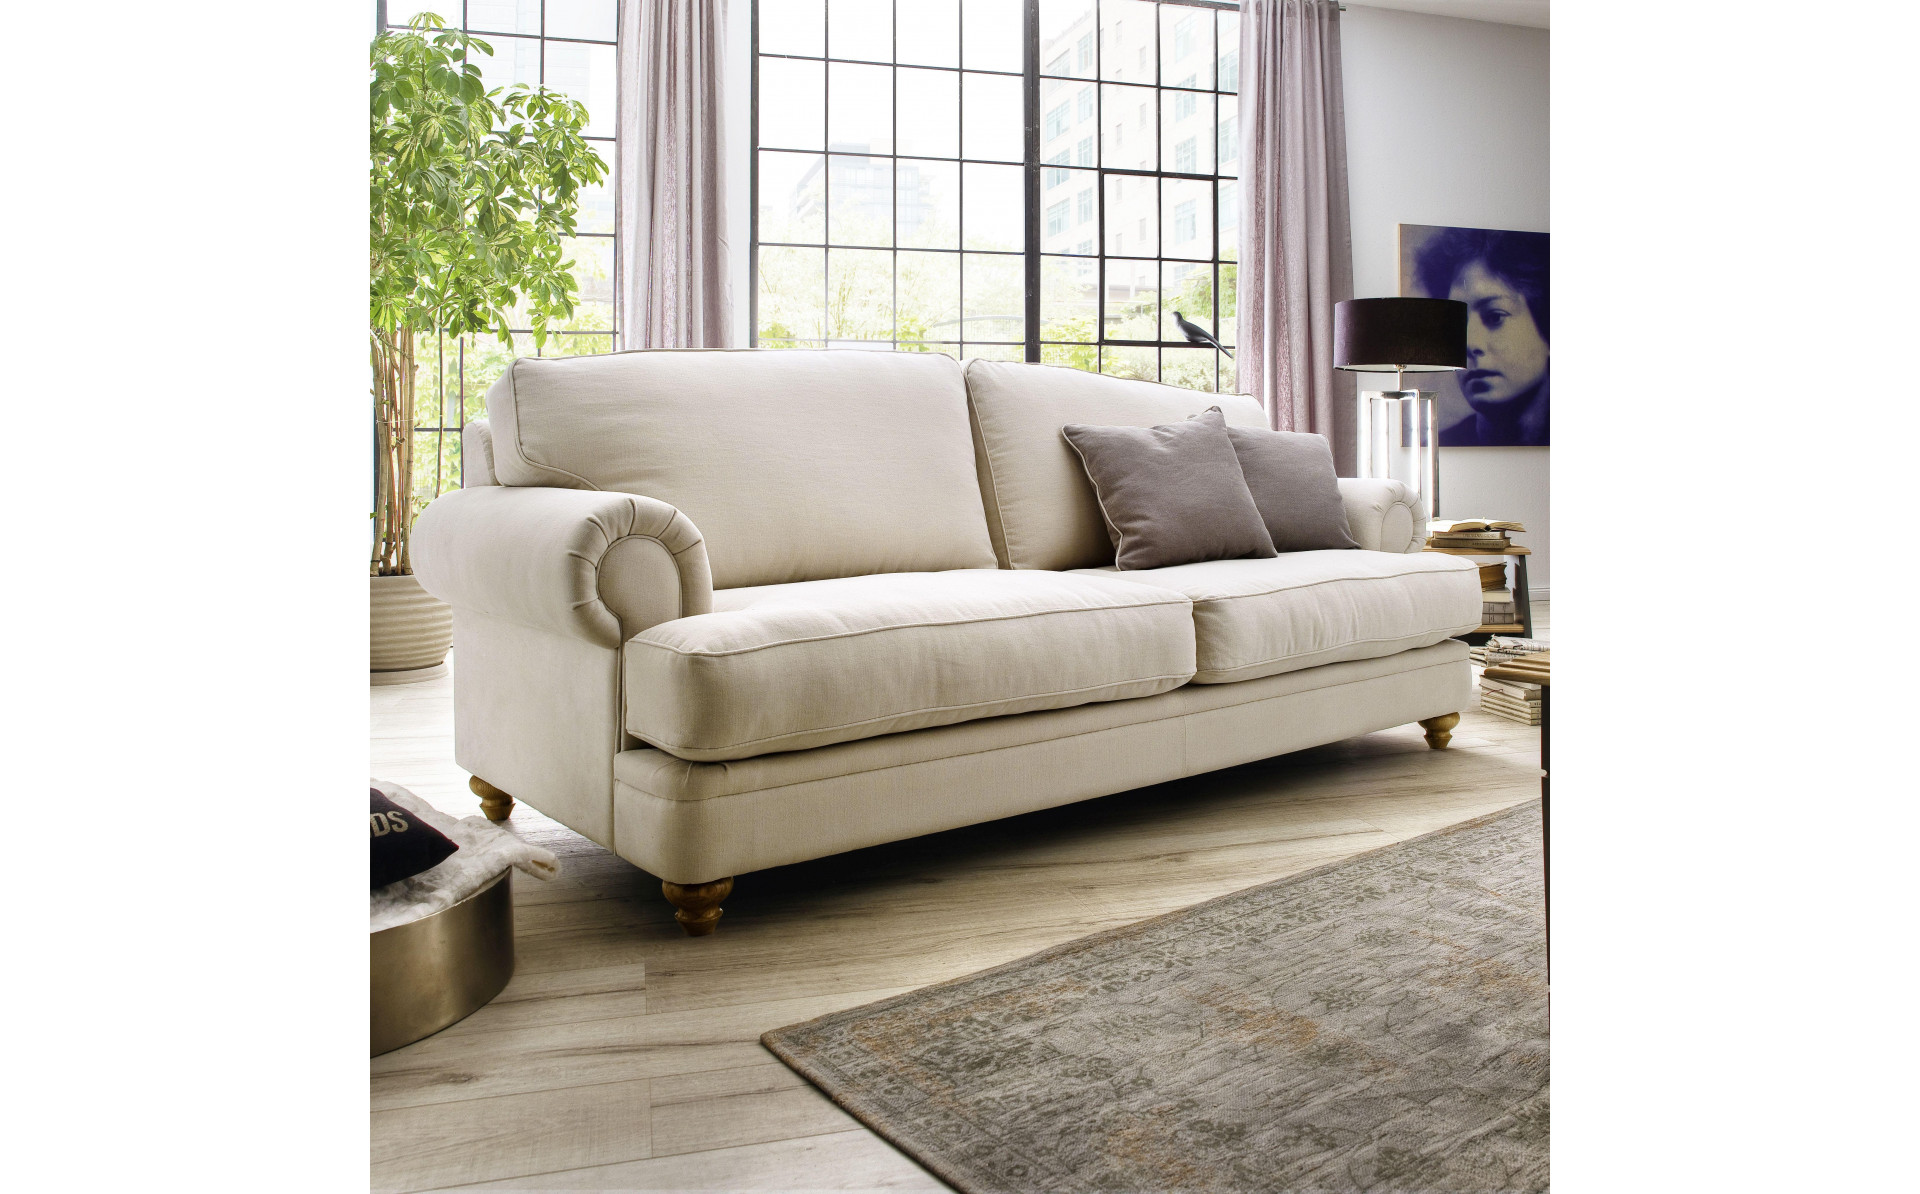 Chelsea stylowa sofa 230cm z dzielonym siedziskiem i standardowym oparciem